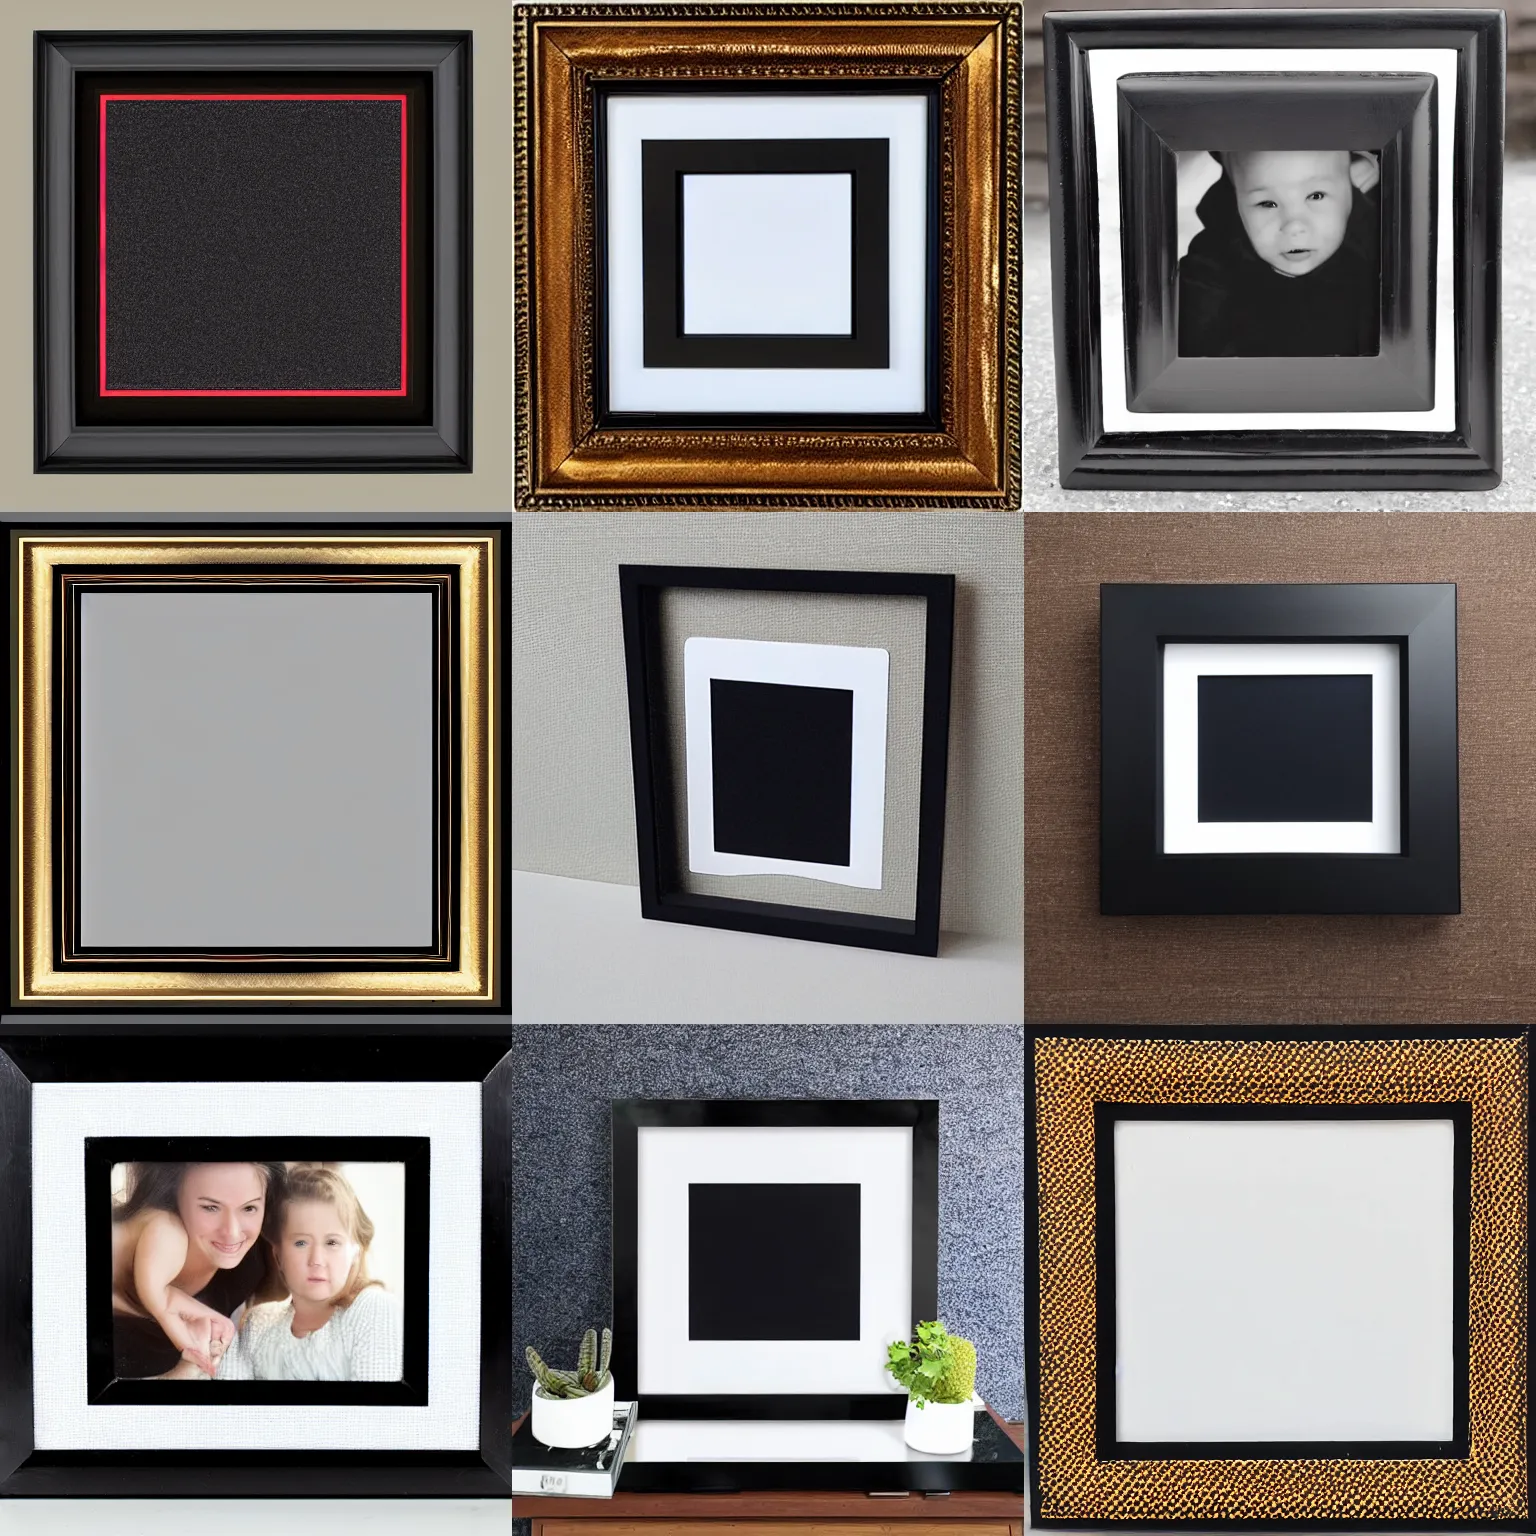 Prompt: solid black square filling frame